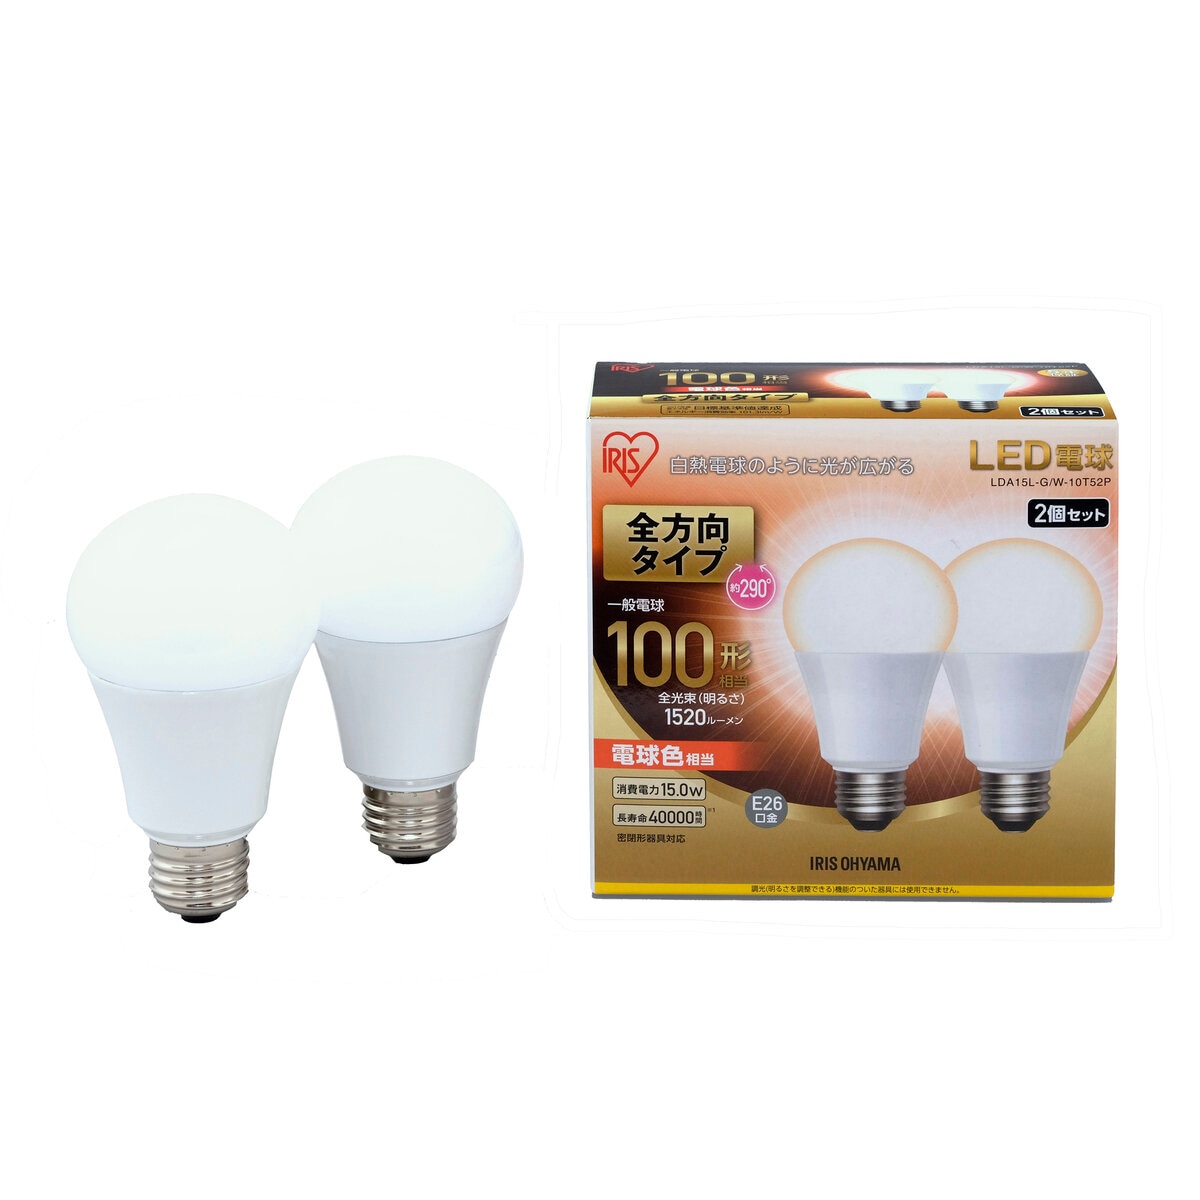 アイリスオーヤマ LED電球 全方向 E26 100型相当 2個セット 電球色 LDA15L-G/W-10T52P